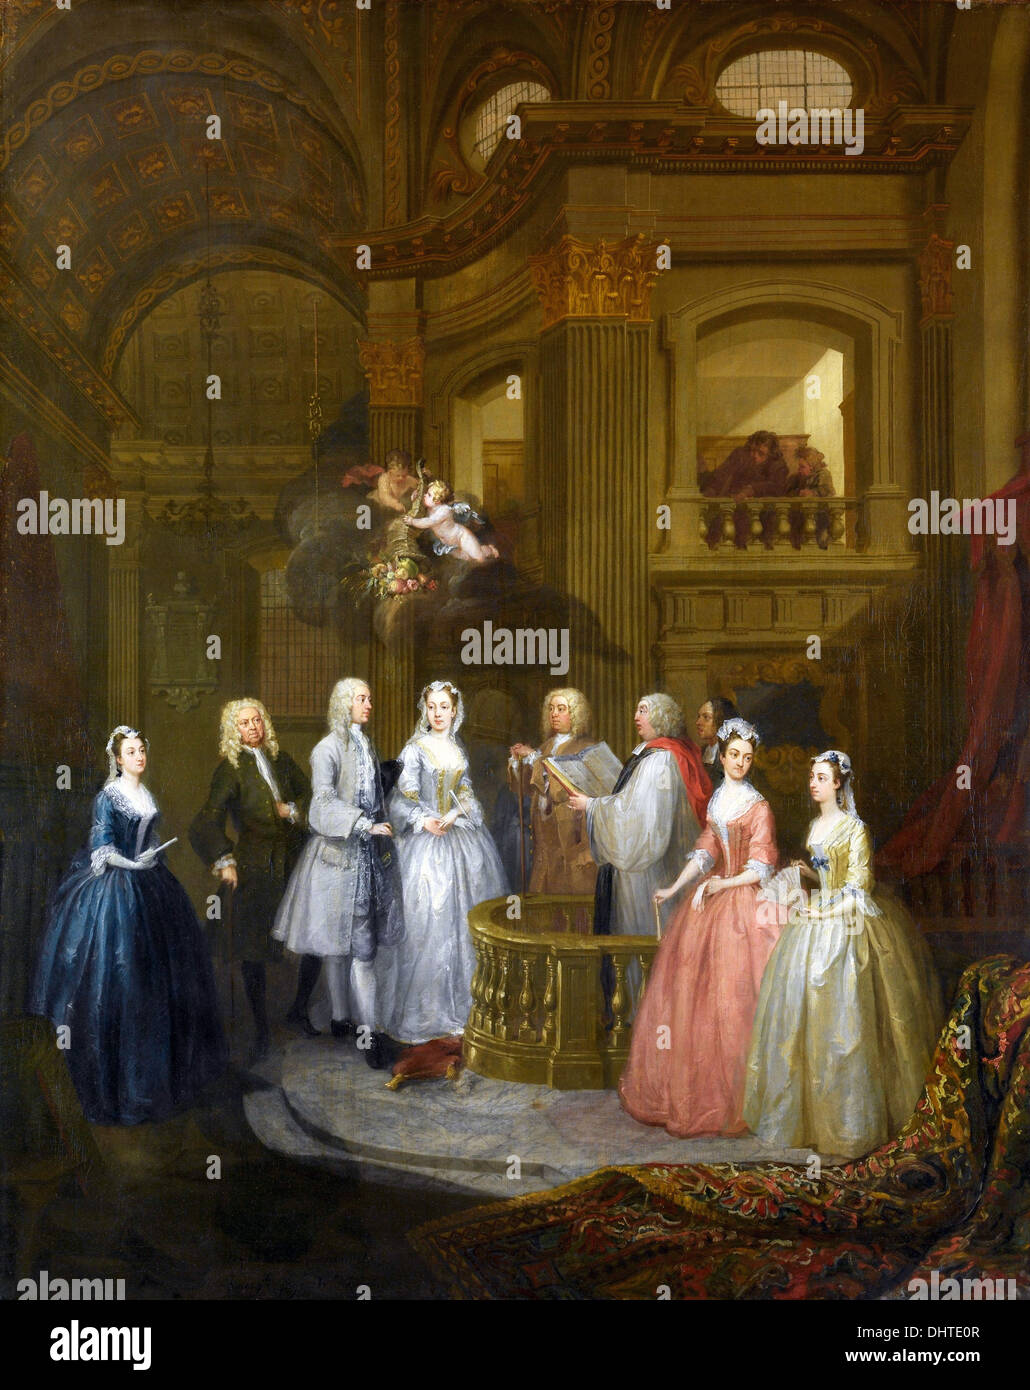 Mariage de Stephen Beckingham et Mary Cox - par William Hogarth, 1729 Banque D'Images